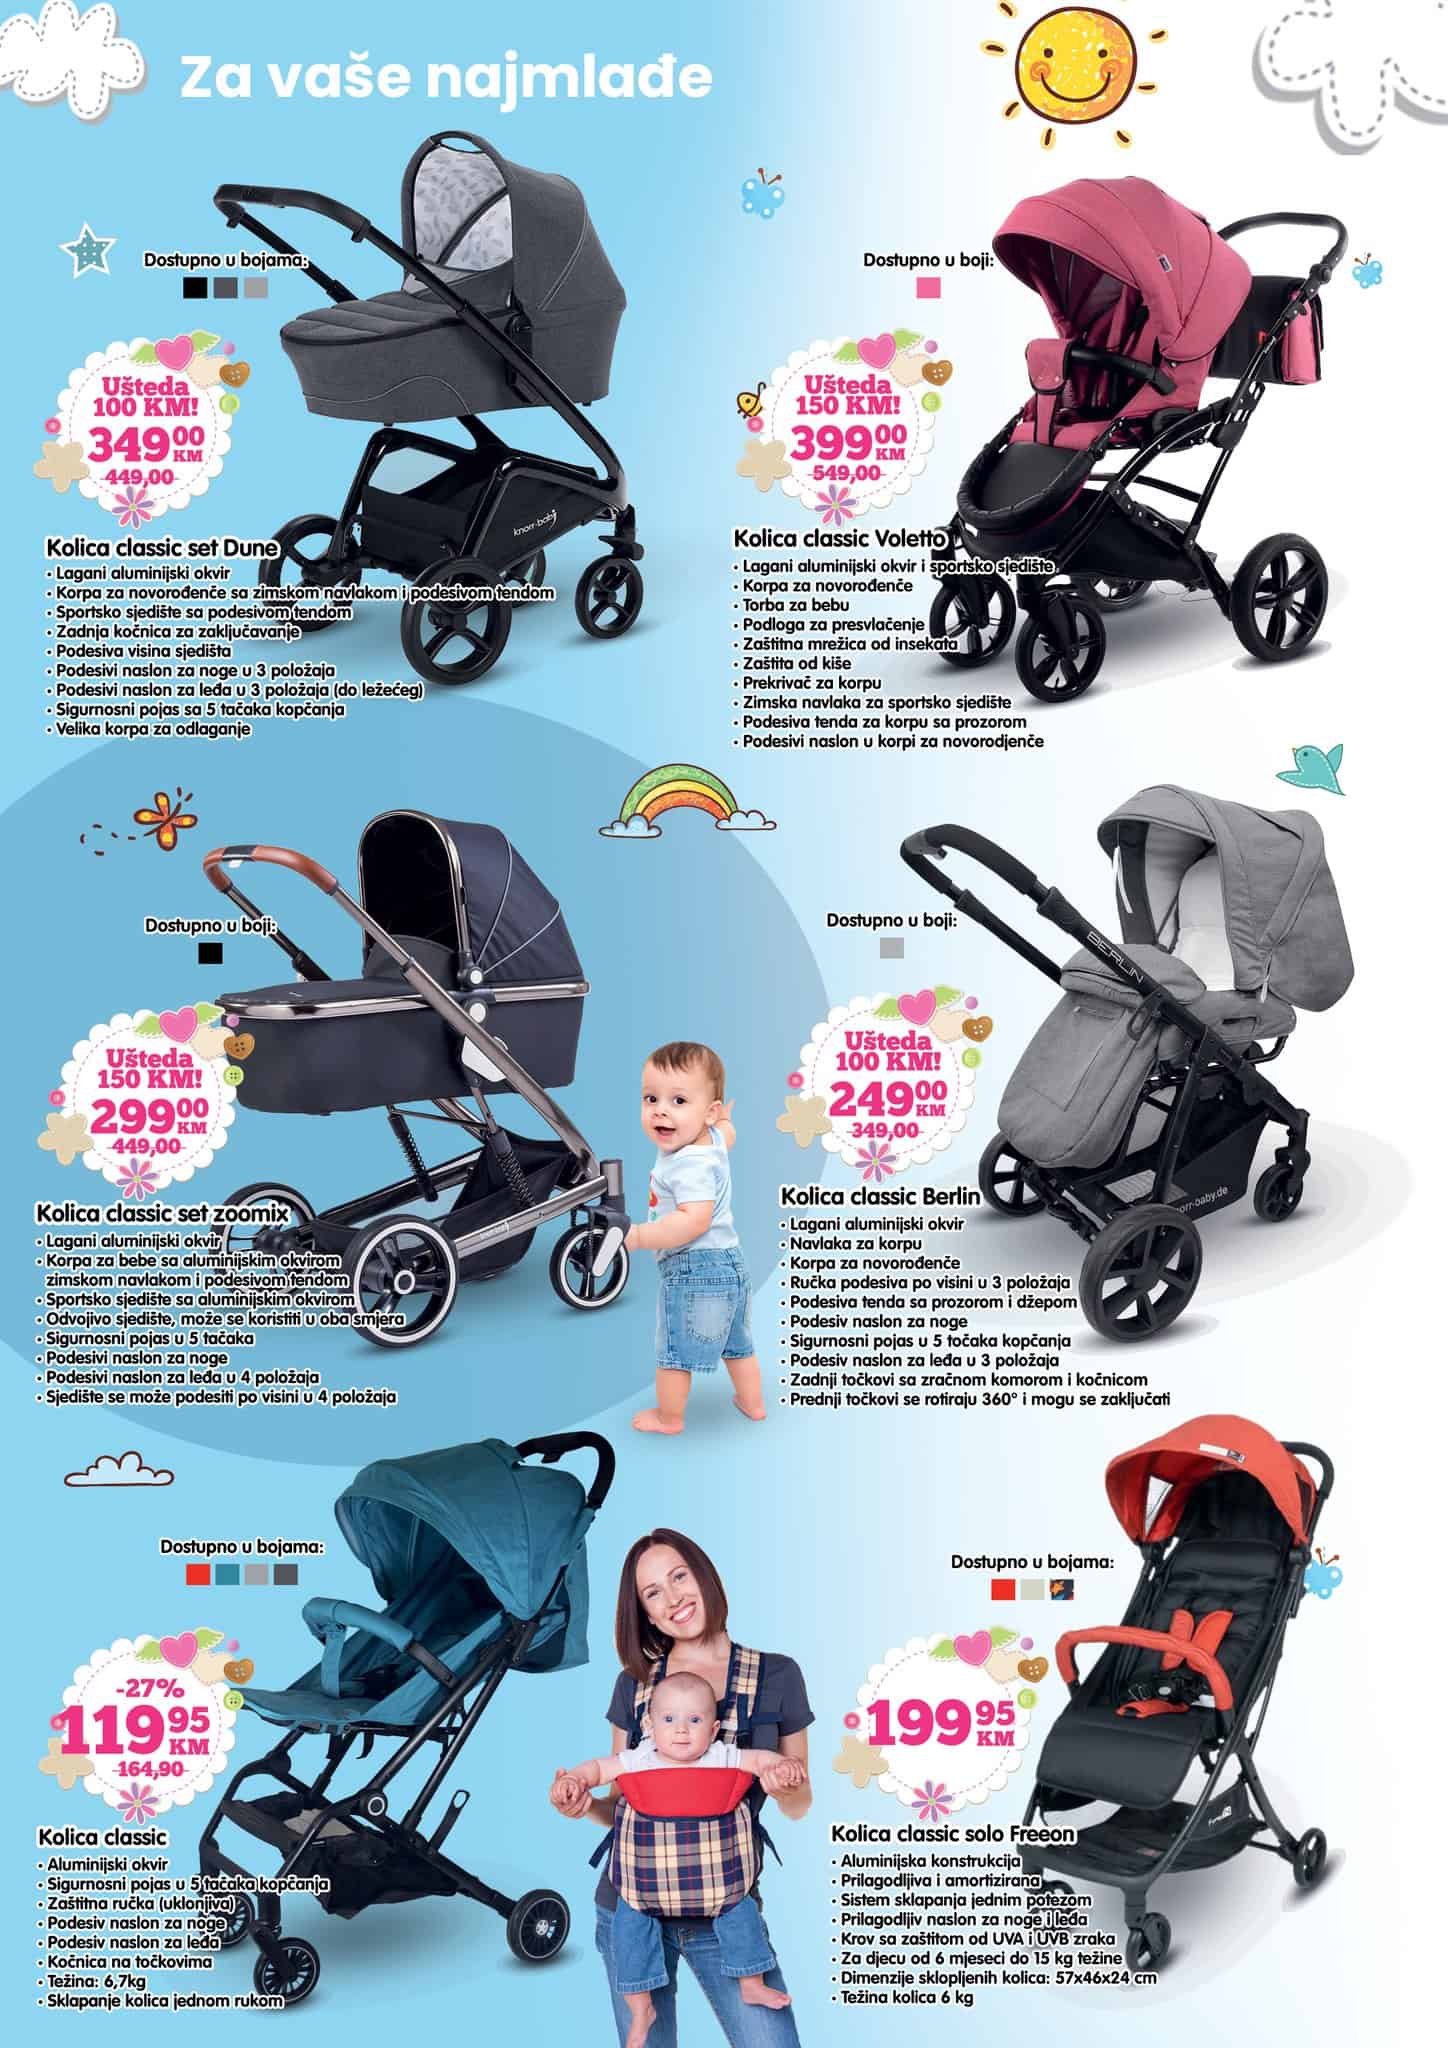 Veliki izbor kolica za bebe pronadjite u novom BINGO katalog-u! 